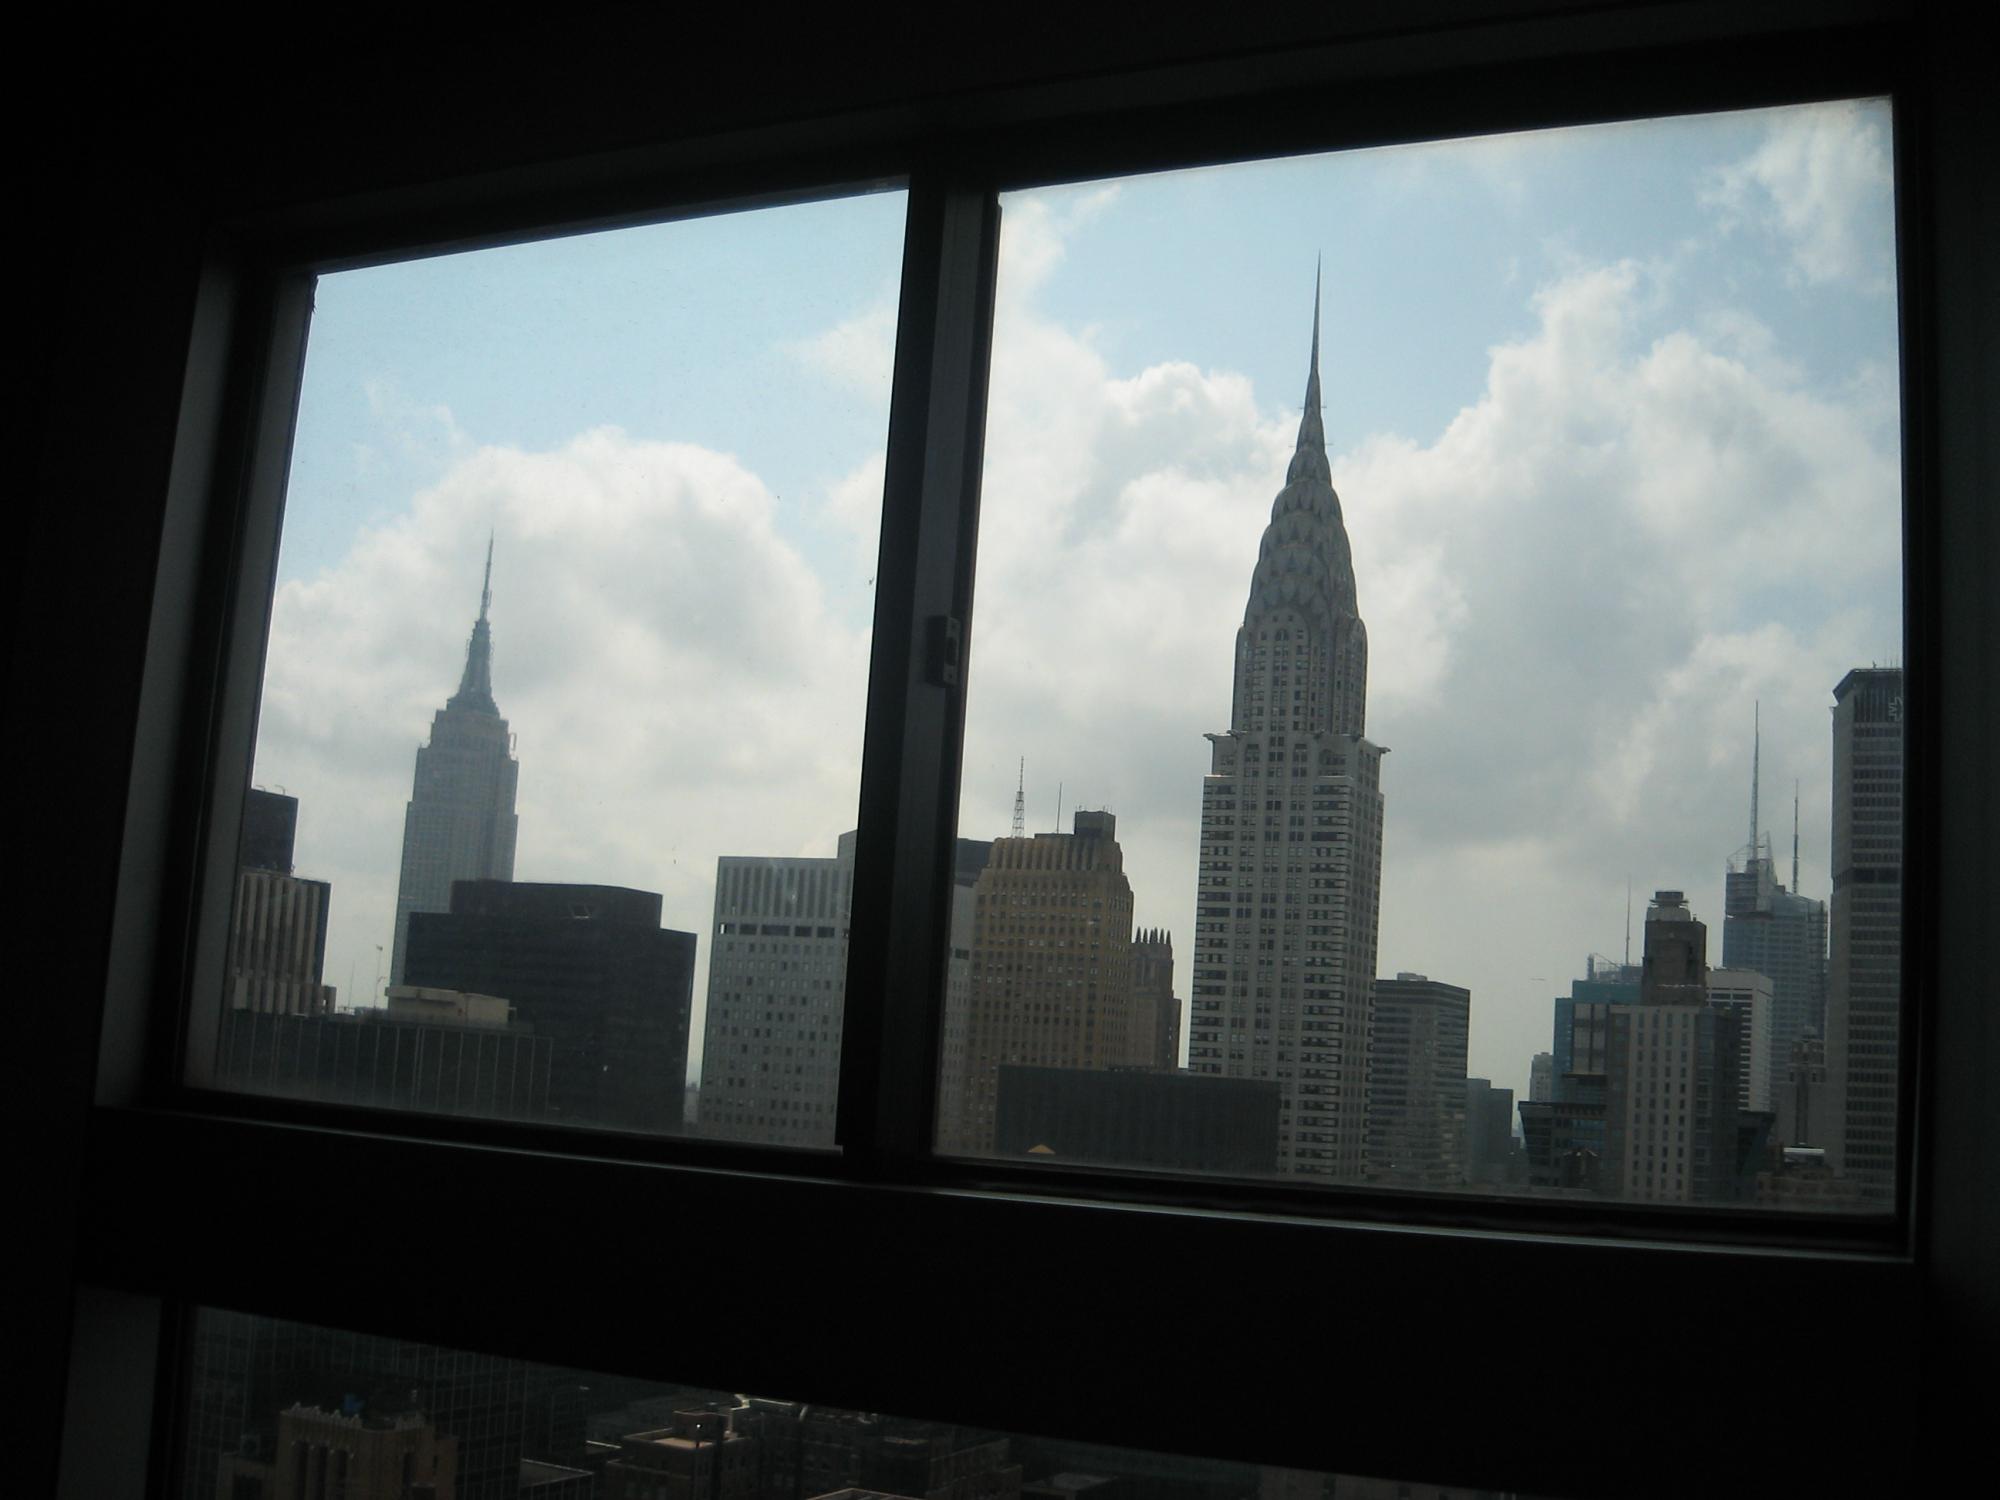 US (Ana) - NYC Hotel Room View